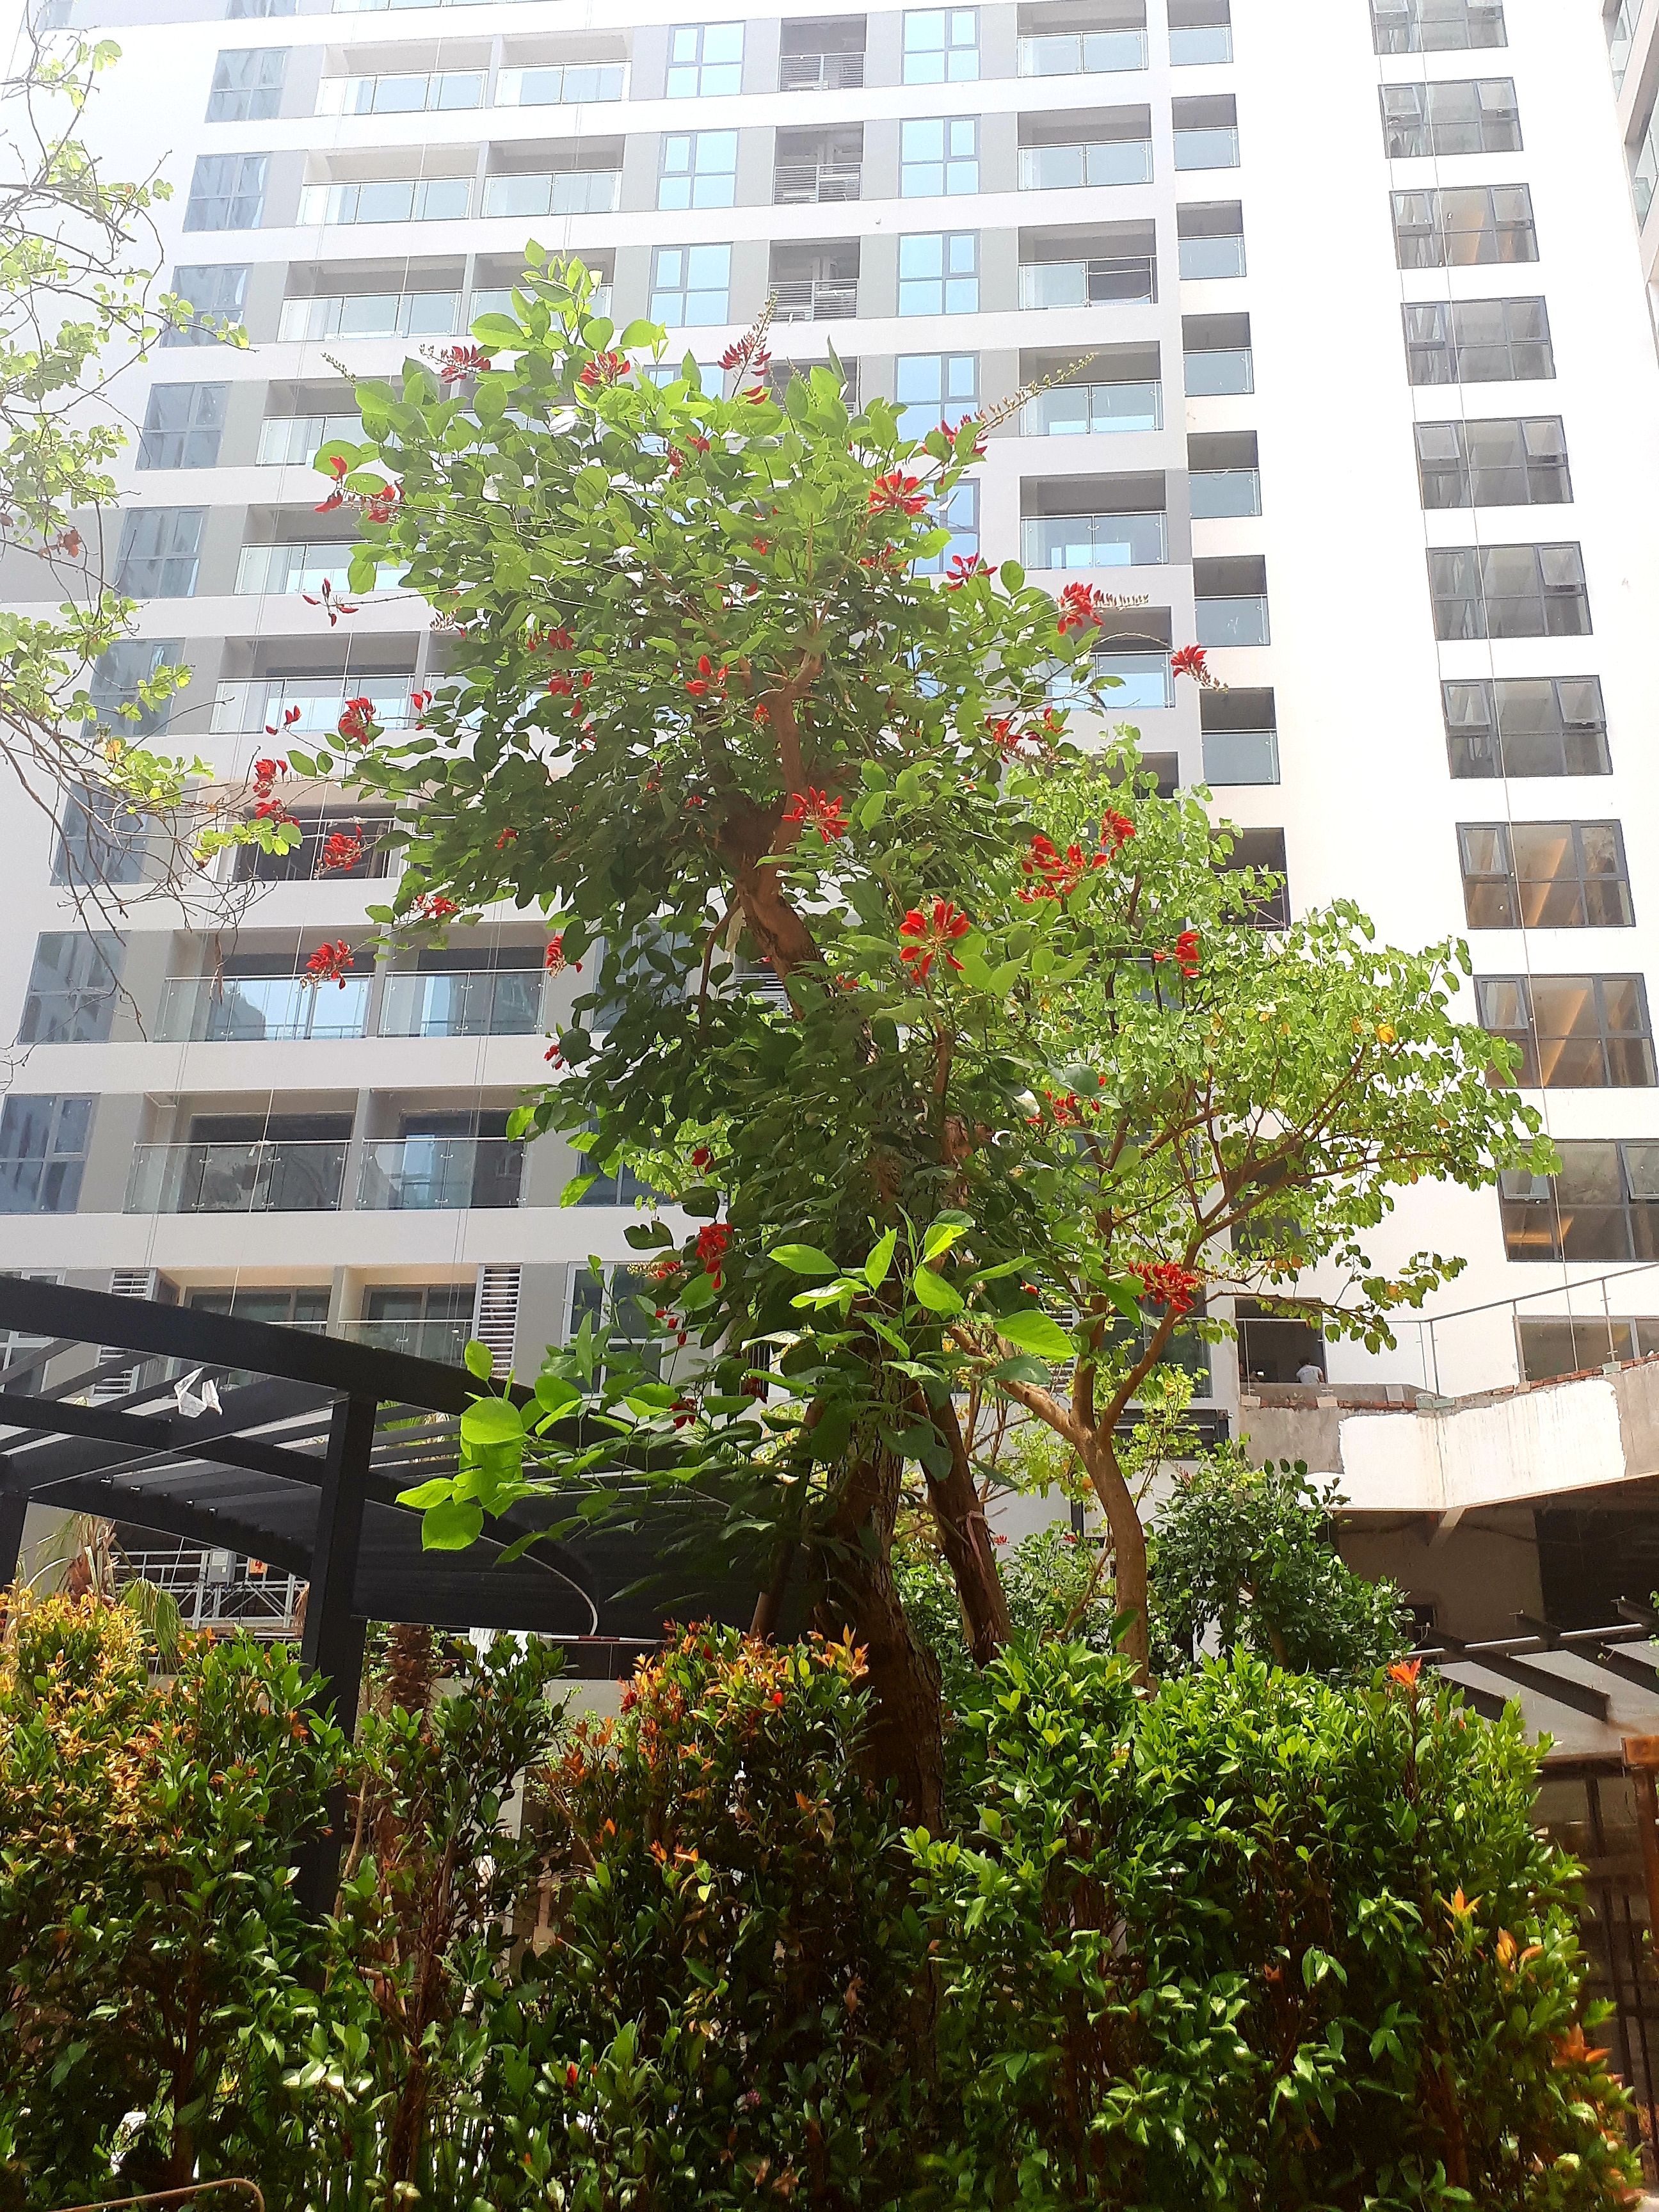 Dự án Rivera Park chiếm được cảm tình khách hàng với hệ thống cây xanh phong phú